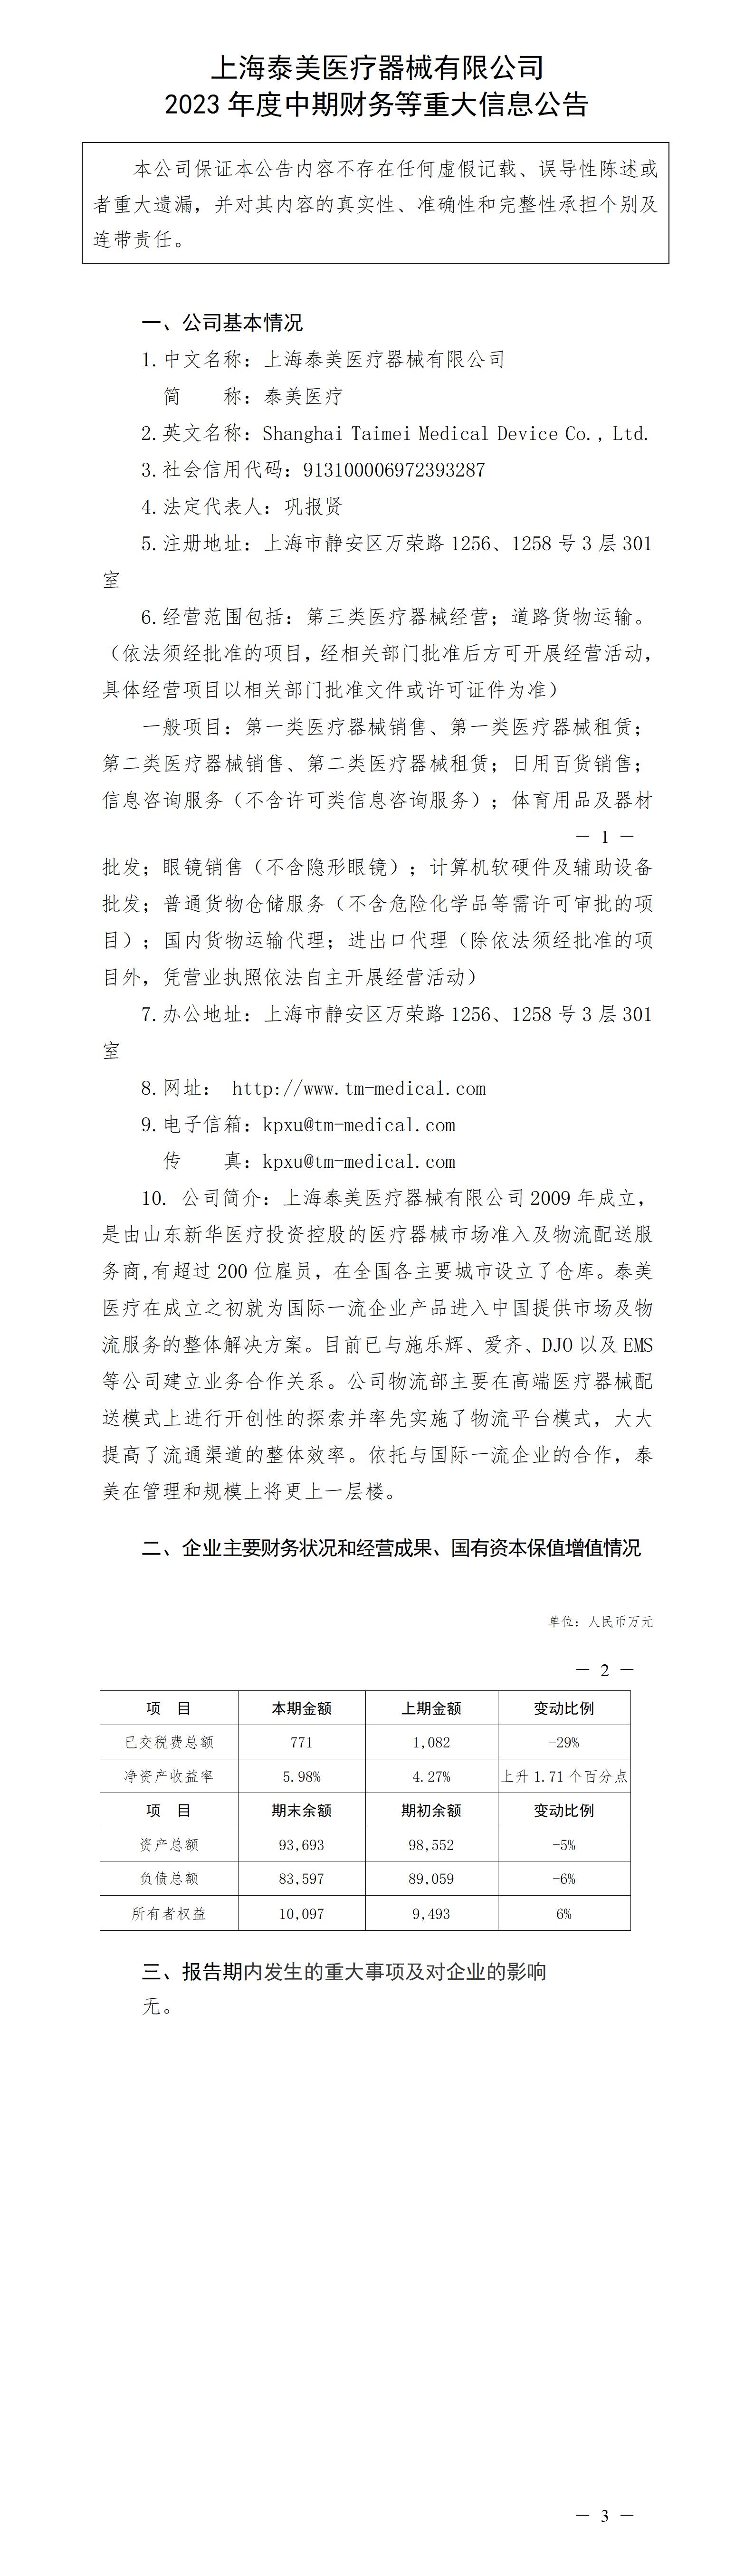 上海泰美醫療器械有限公司2023年度中期財務等重大信息公告_01.jpg